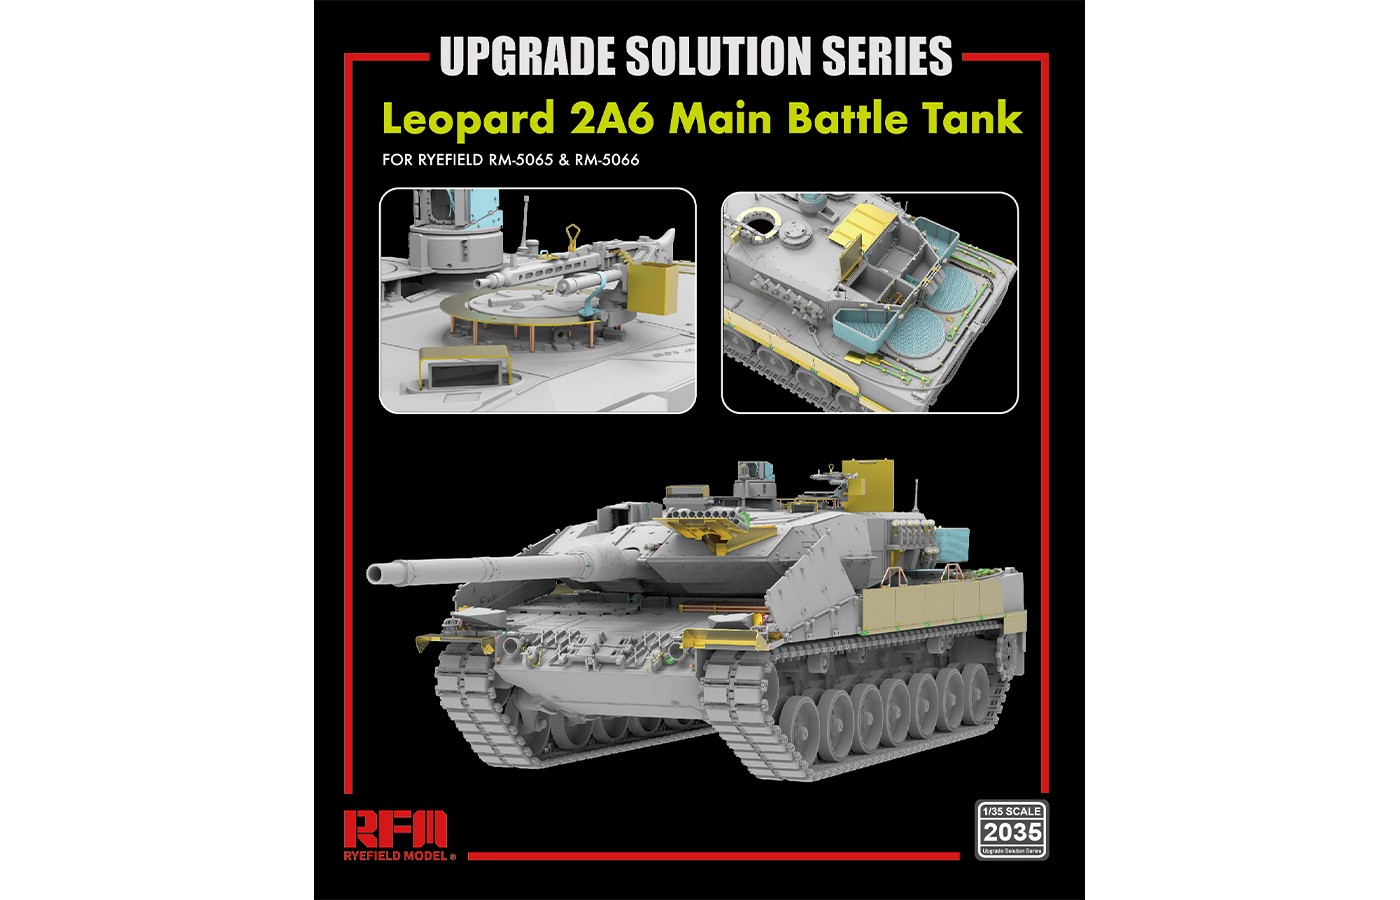 RM-2035  Leopard 2A6 Main Battle Tank  UPGRADE SOLUTION SERIES